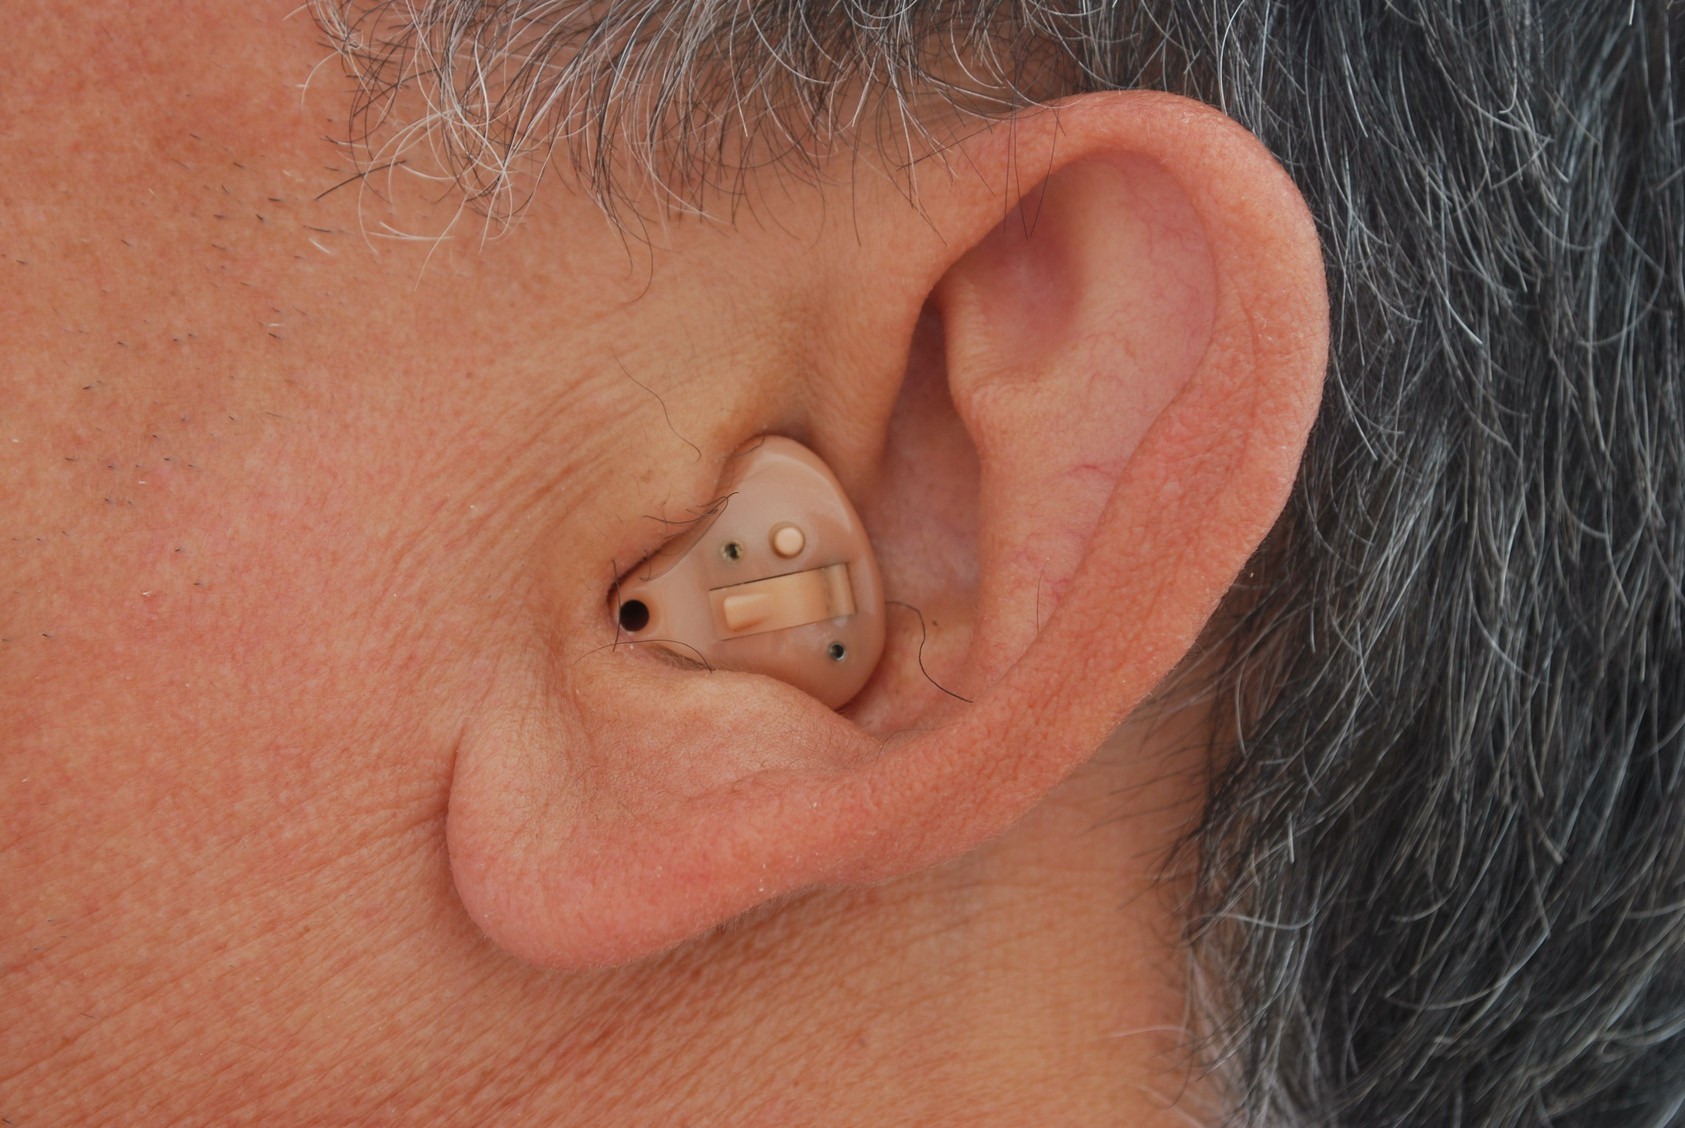 Ear hearing. Внутриушной слуховой аппарат Phonak. Усилитель слуховой аппарат внутриушной. Внутриушные слуховые аппараты (ite). Внутриушный слуховой аппарат у301 с МР.